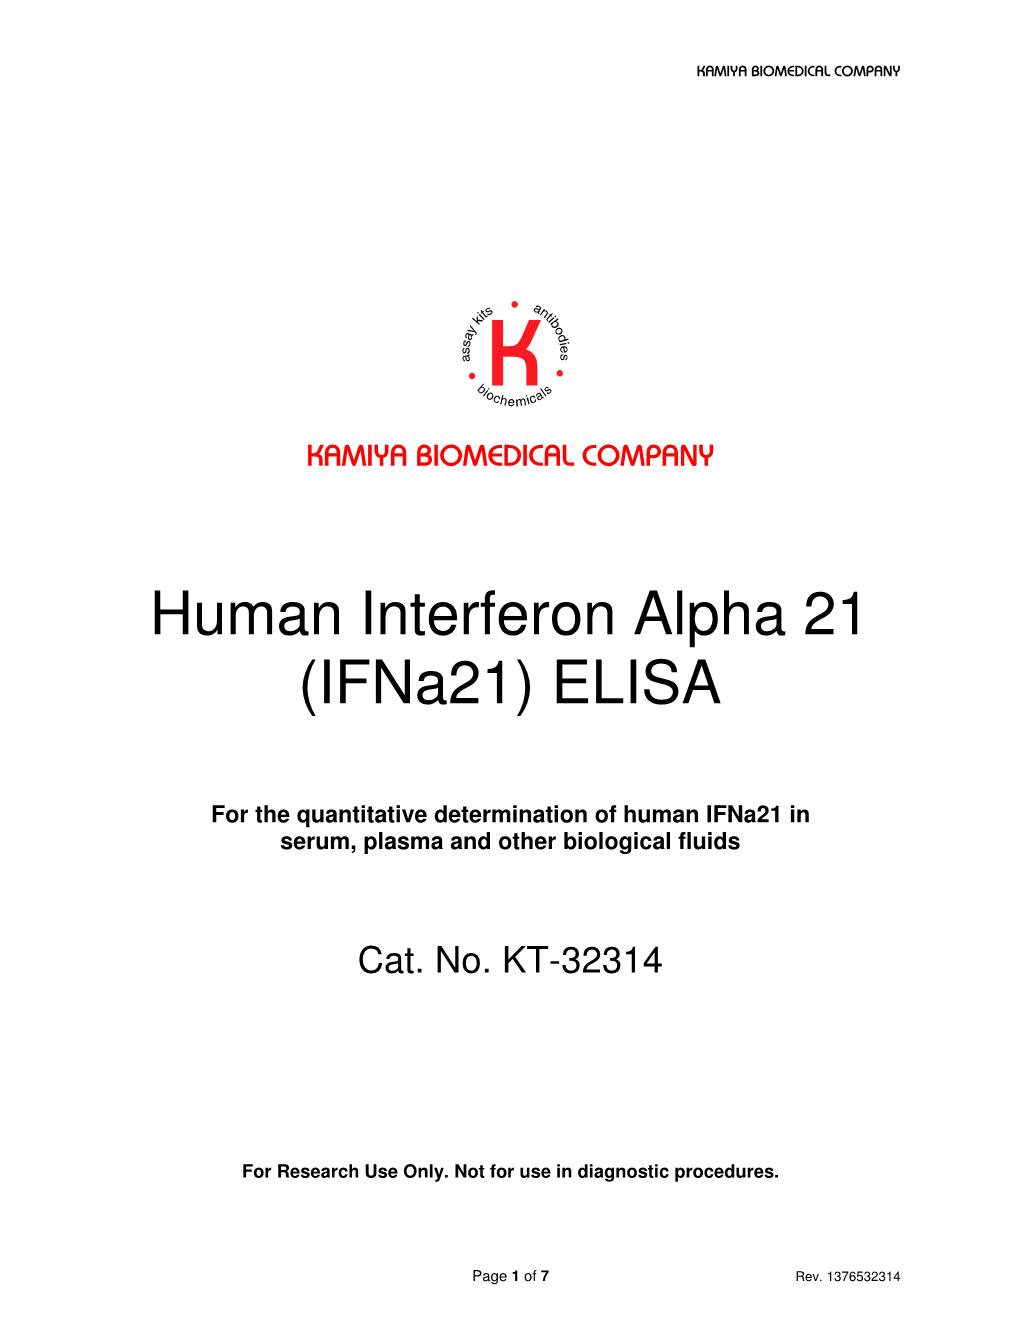 Human Interferon Alpha 21 (Ifna21) ELISA